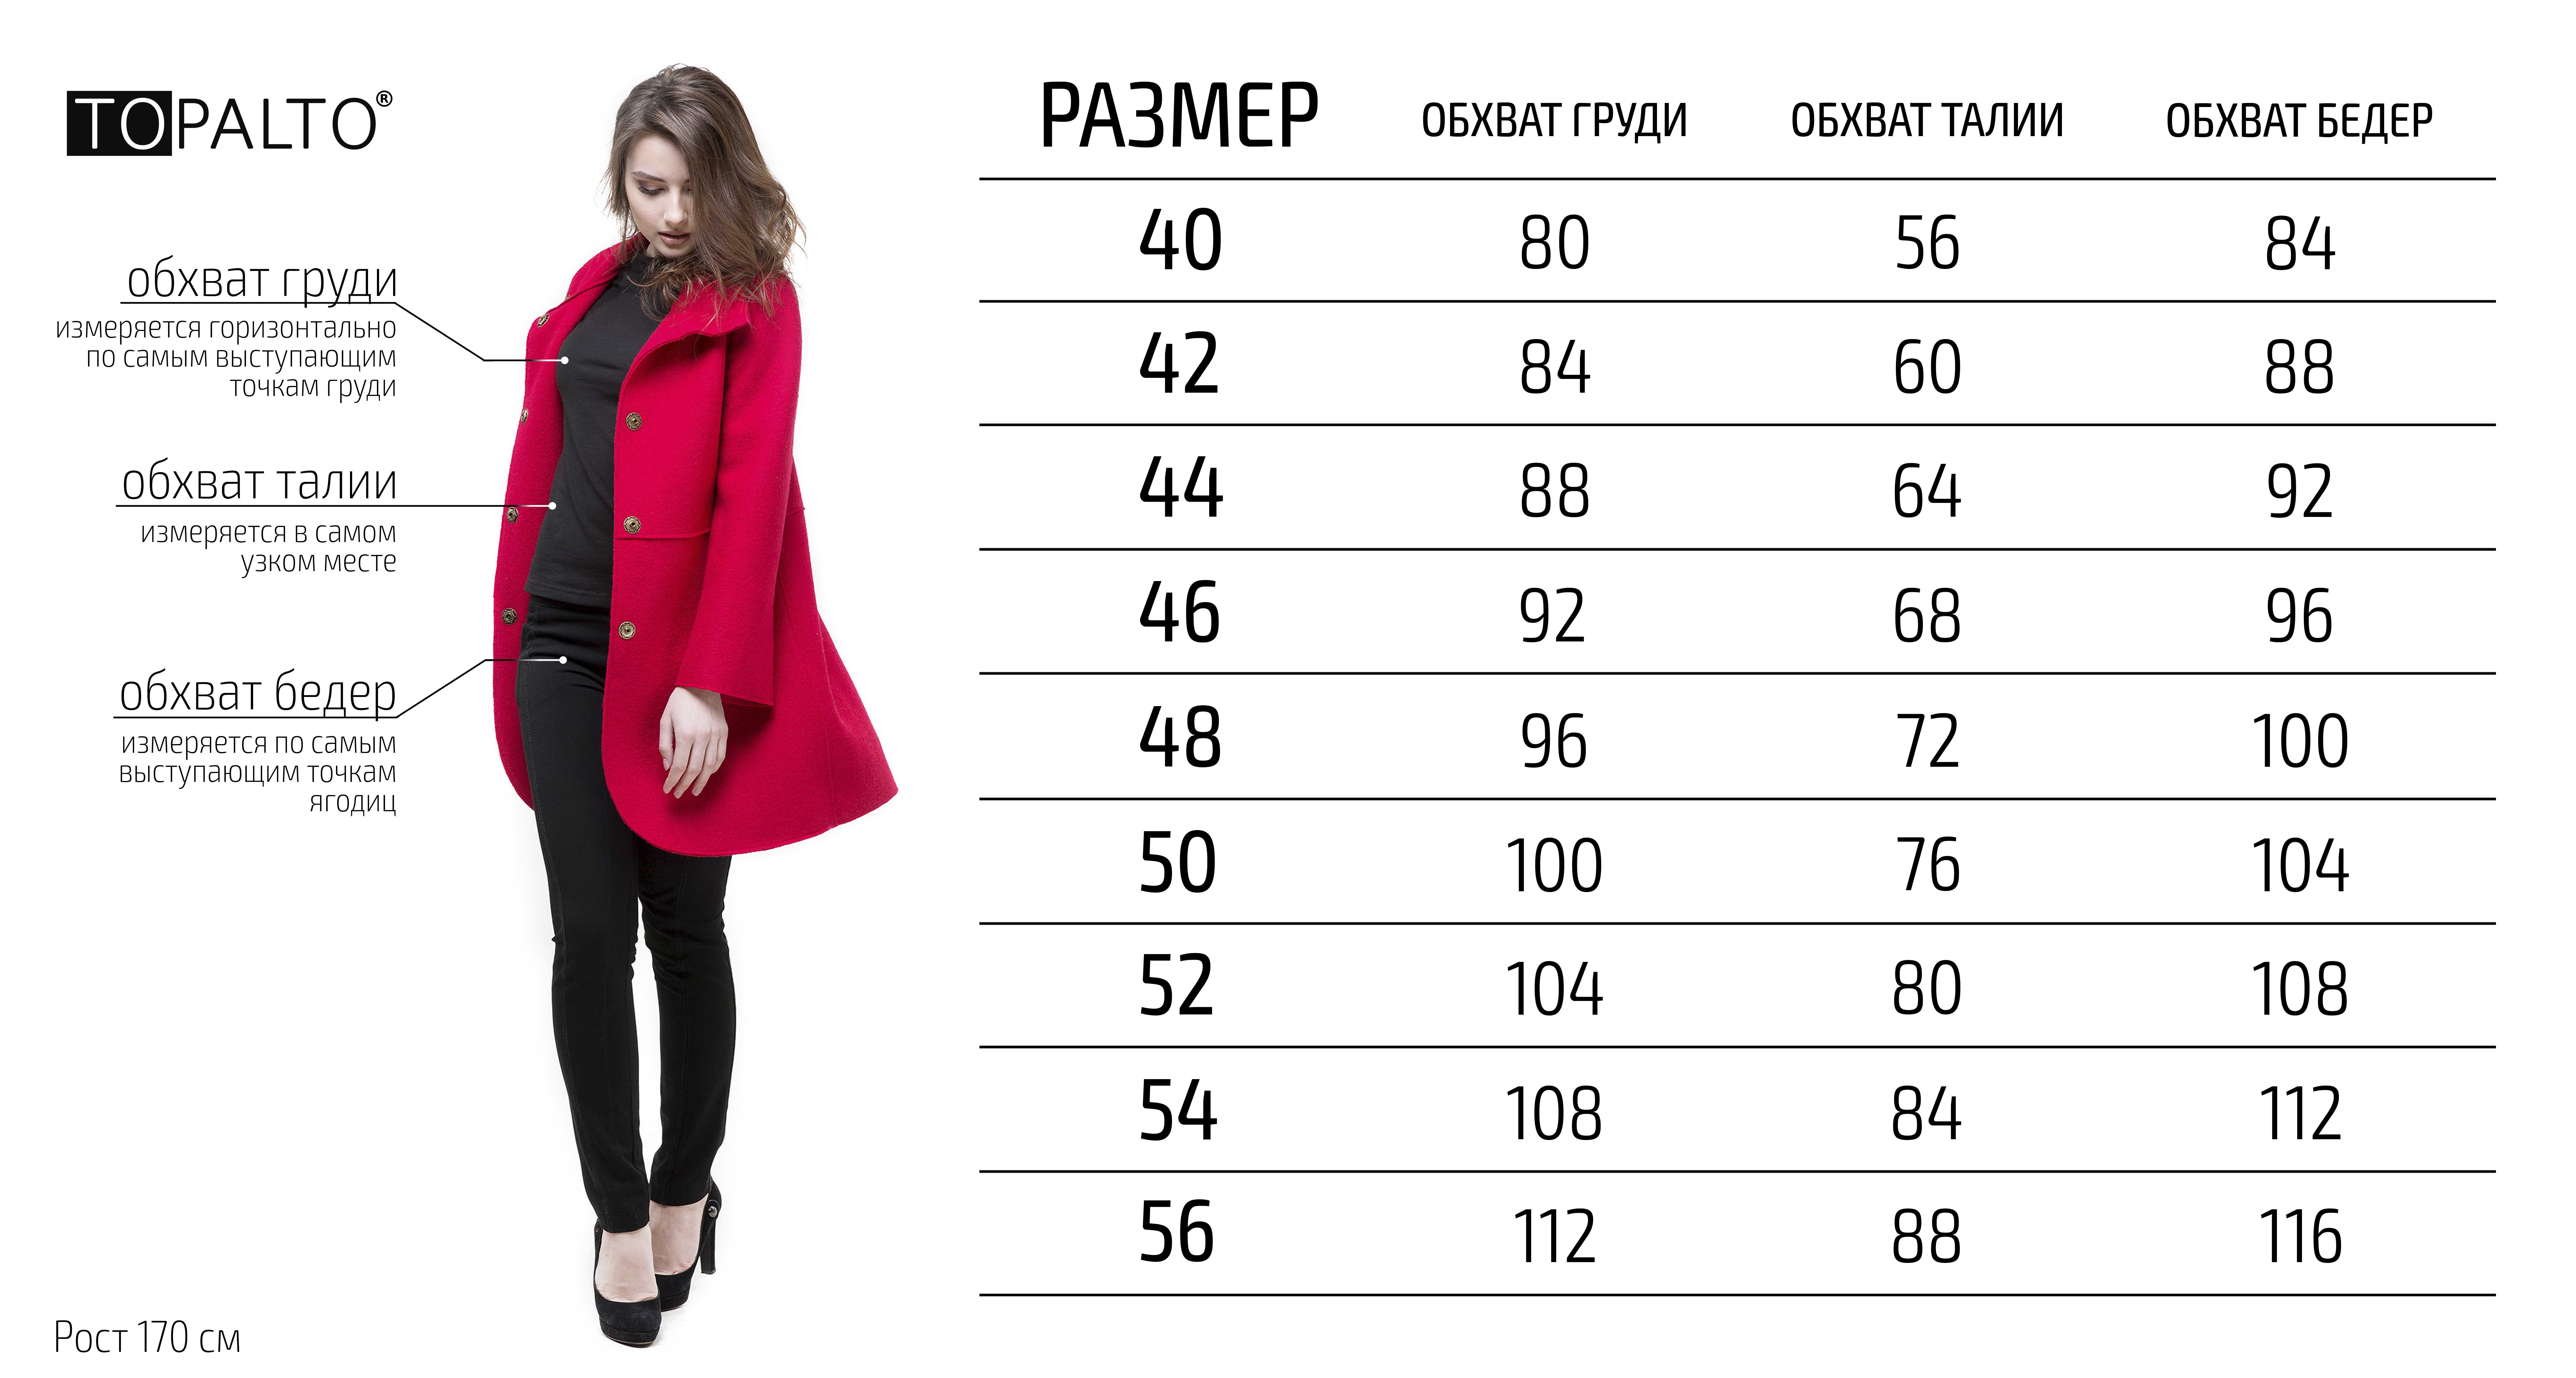 Размеры пальто купить в интернет магазине. Шуба размер 44 46 Размерная сетка. Размерная сетка пальто женское. Размеры пальто женские. Таблица размеров пальто для женщин.